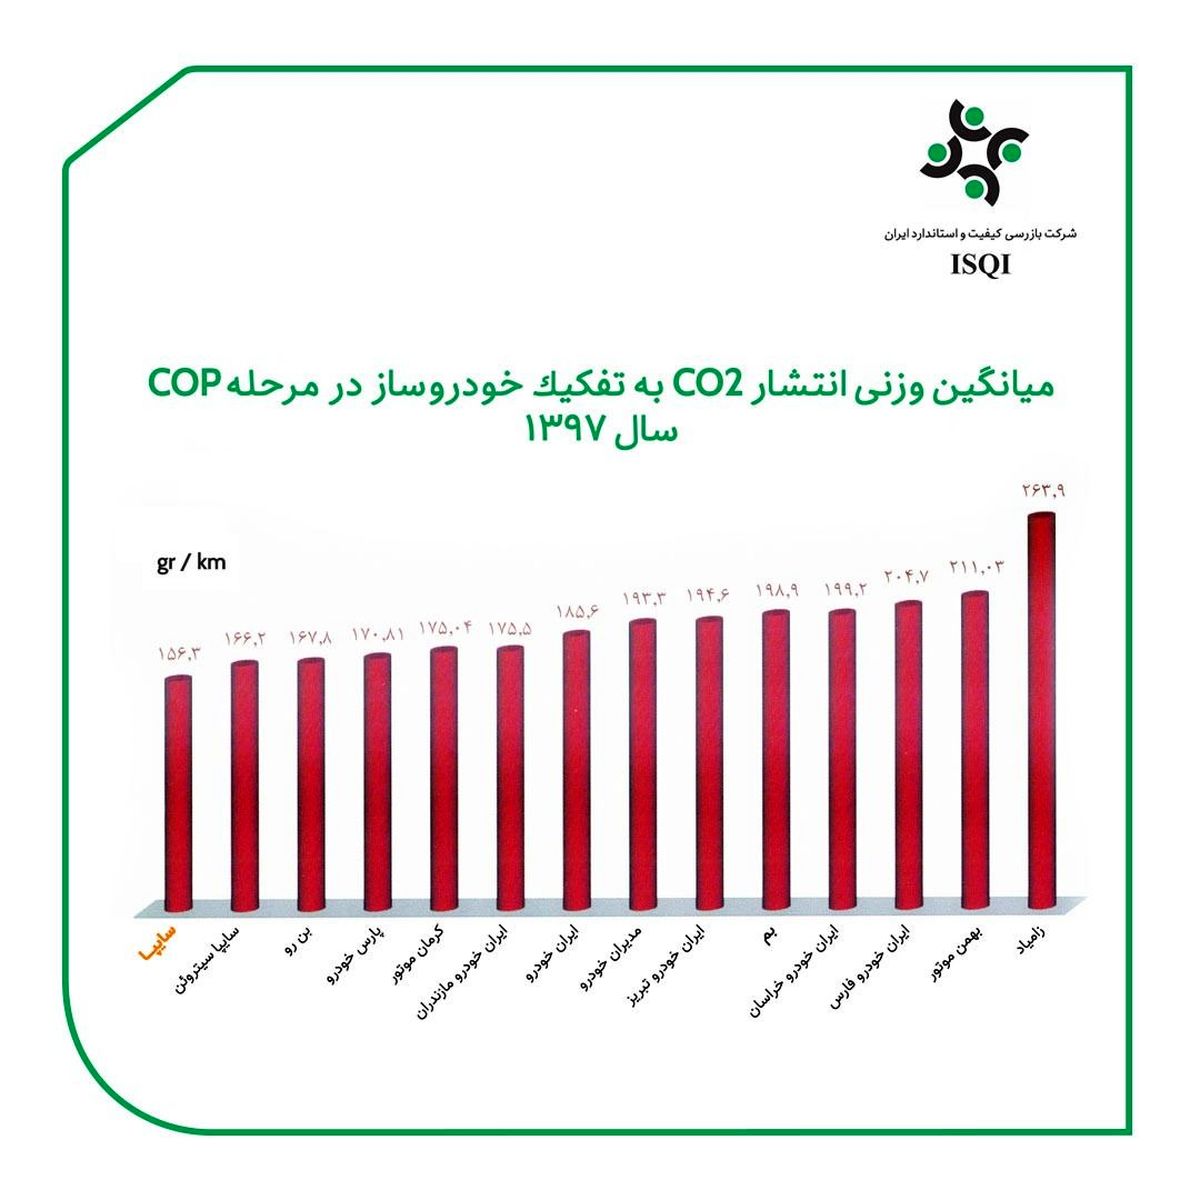 محصولات سایپا کمترین میزان CO2 را تولید می‌کنند / سایپا حائز رتبه اول پاک‌ترین خودروساز ایران در میزان آلایندگی هوا با گاز دی‌اکسیدکربن